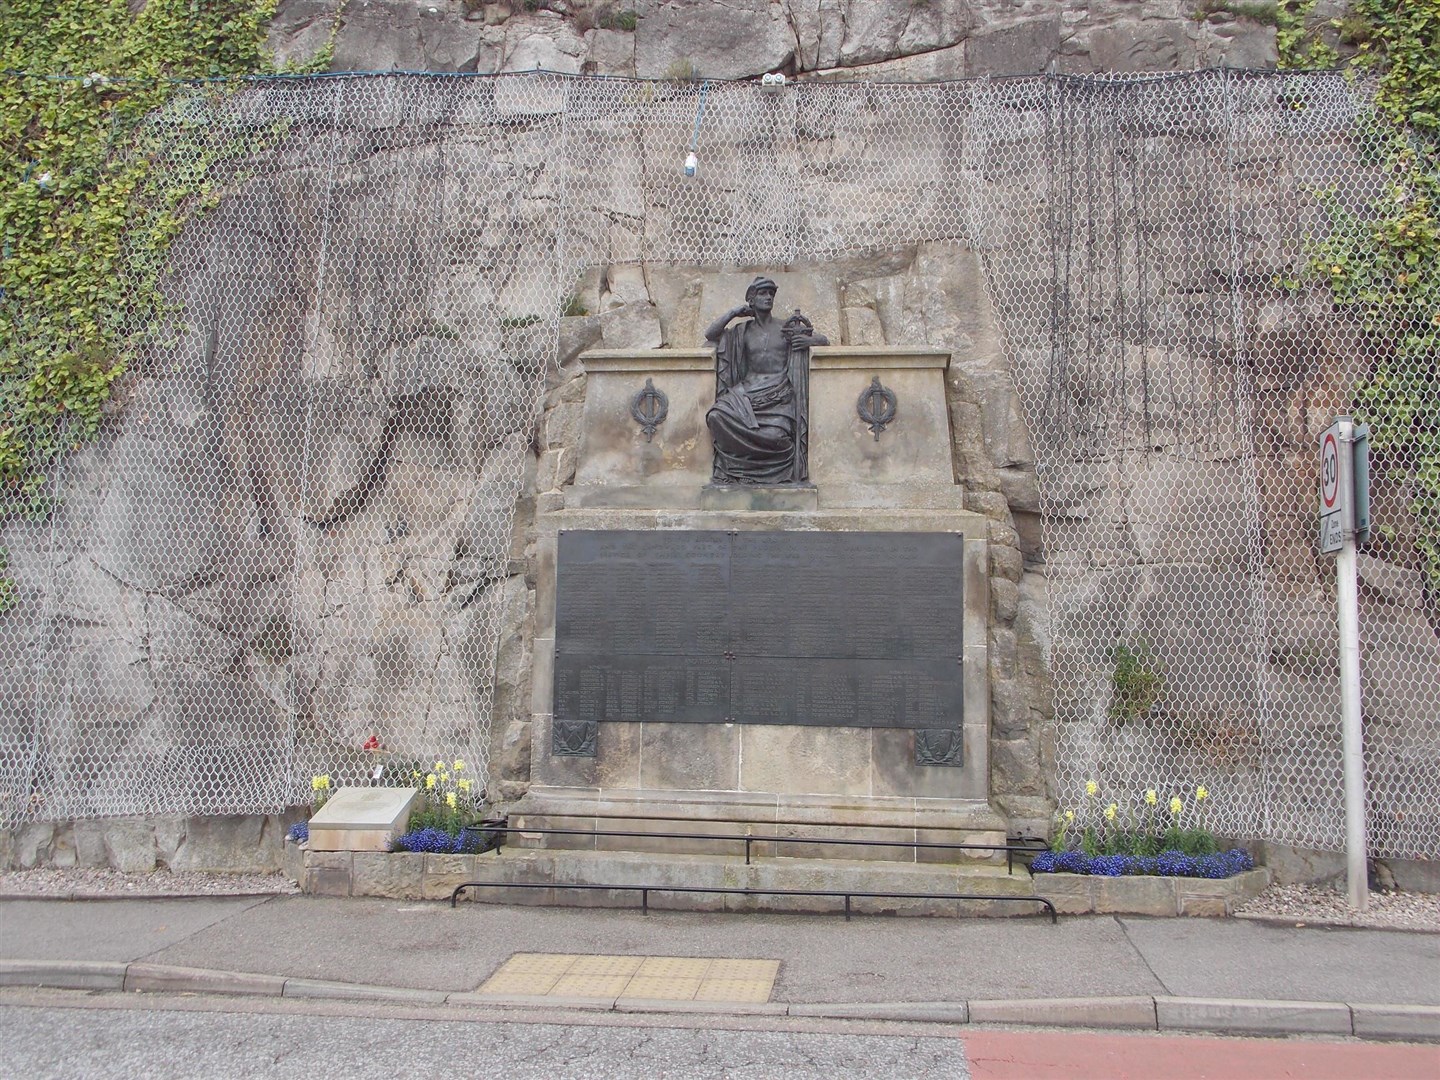 The war memorial at Lossiemouth.